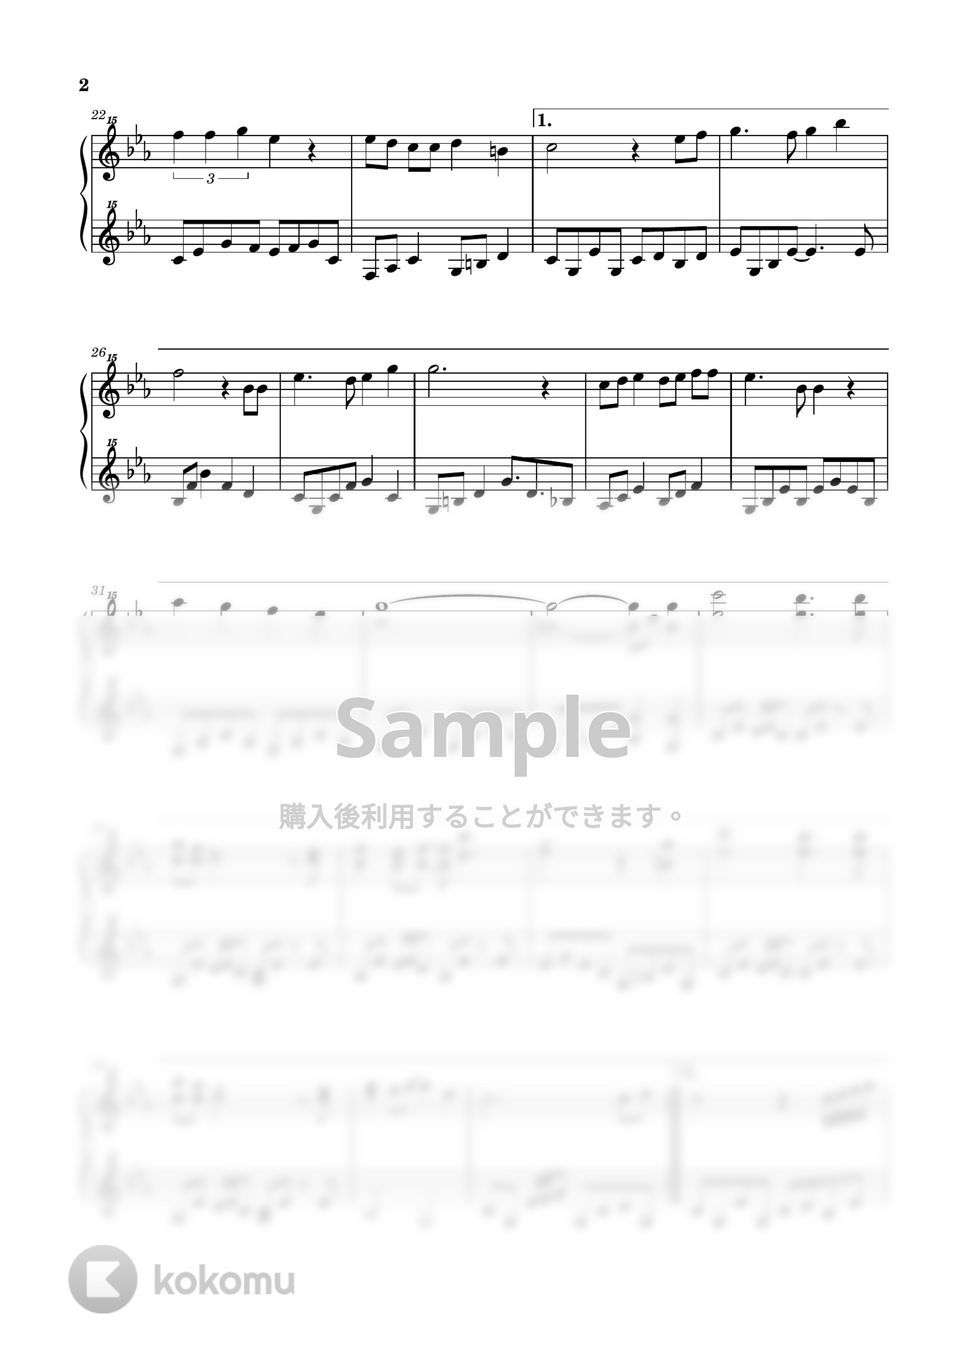 久石譲 - 君をのせて (天空の城ラピュタ / トイピアノ / 32鍵盤) by 川西三裕